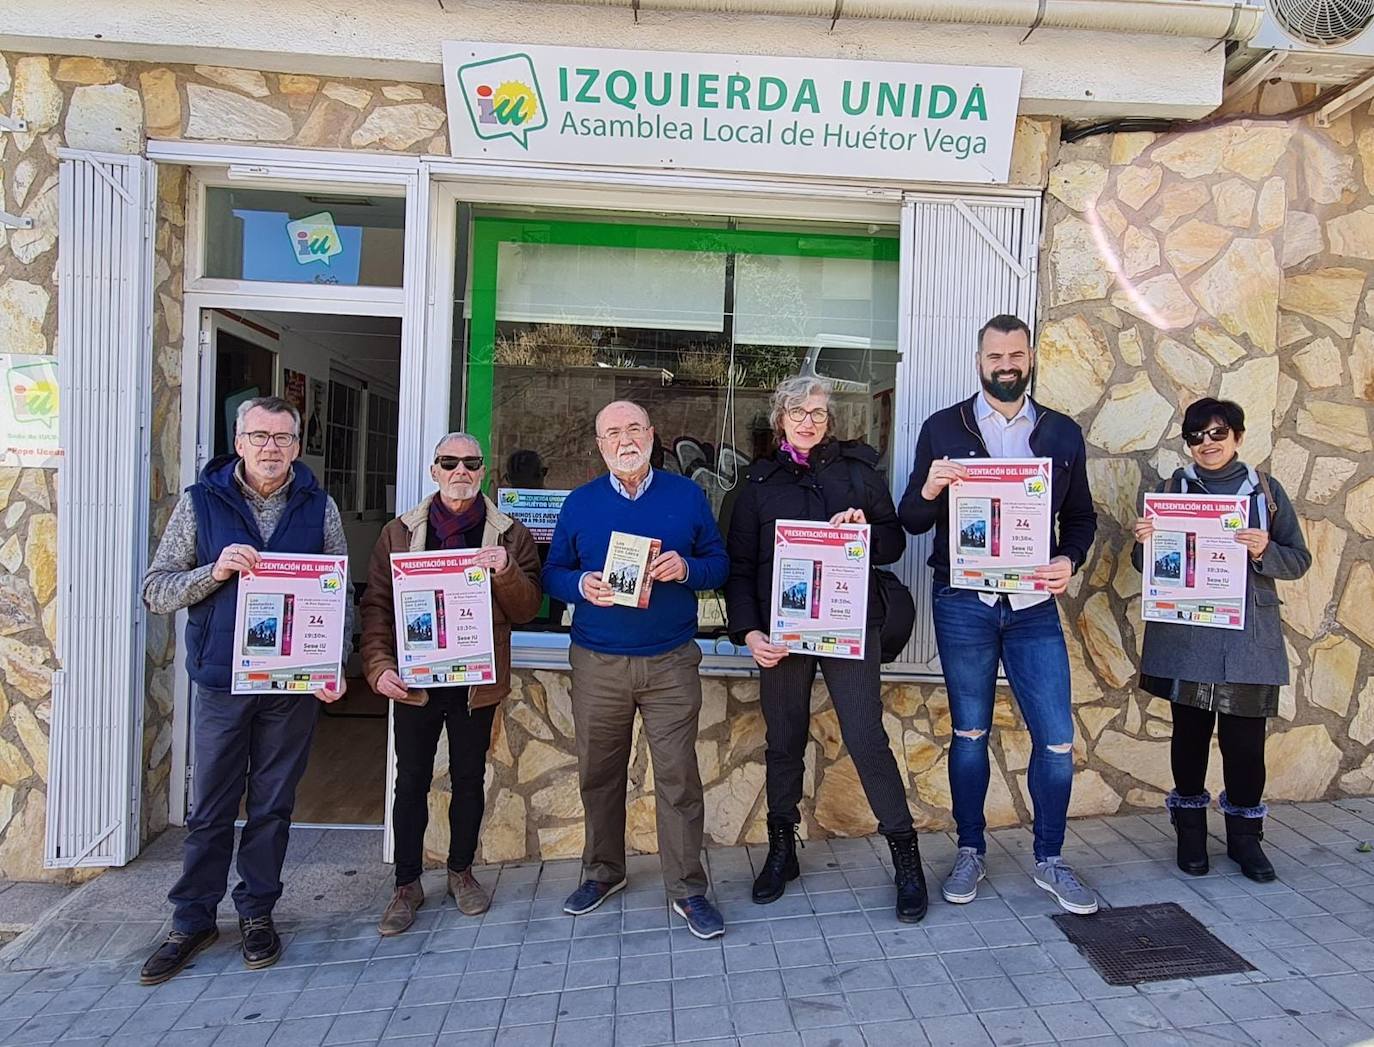 El periodista Paco Vigueras presentará 'Los paseados con Lorca' en la sede de IU Huétor Vega